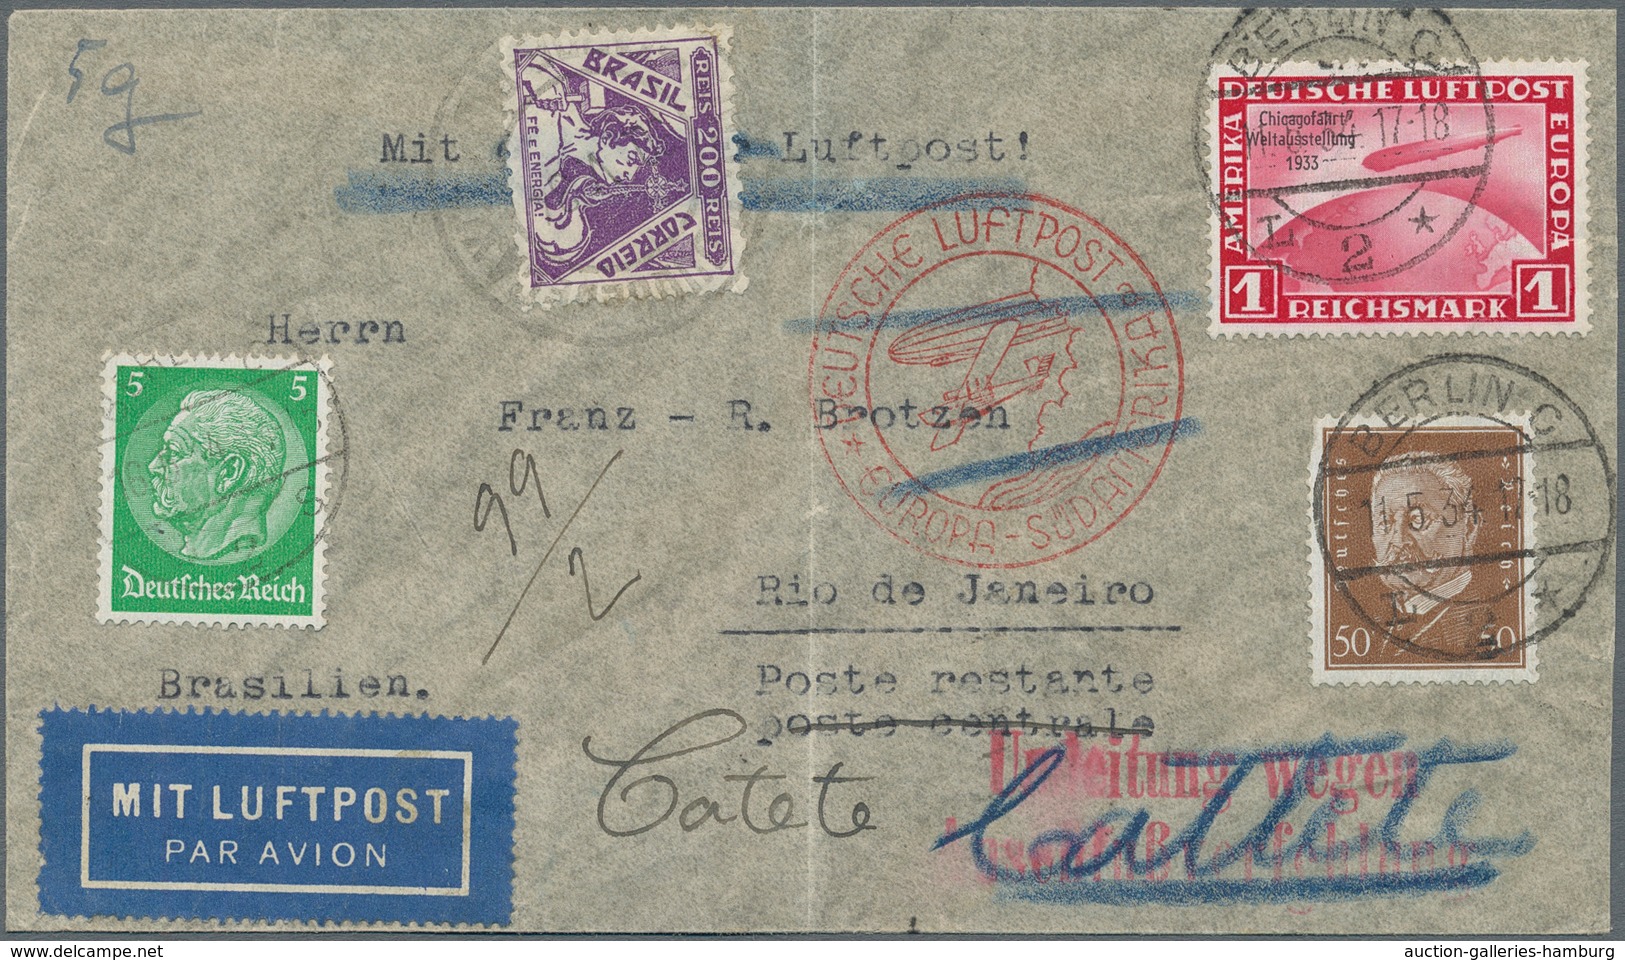 Flugpost Deutschland: 1934, Bedarfs-Luftpostbrief Mit 1.55 RM-Frankatur (incl. 1 RM Chicagofahrt) Ab - Luft- Und Zeppelinpost